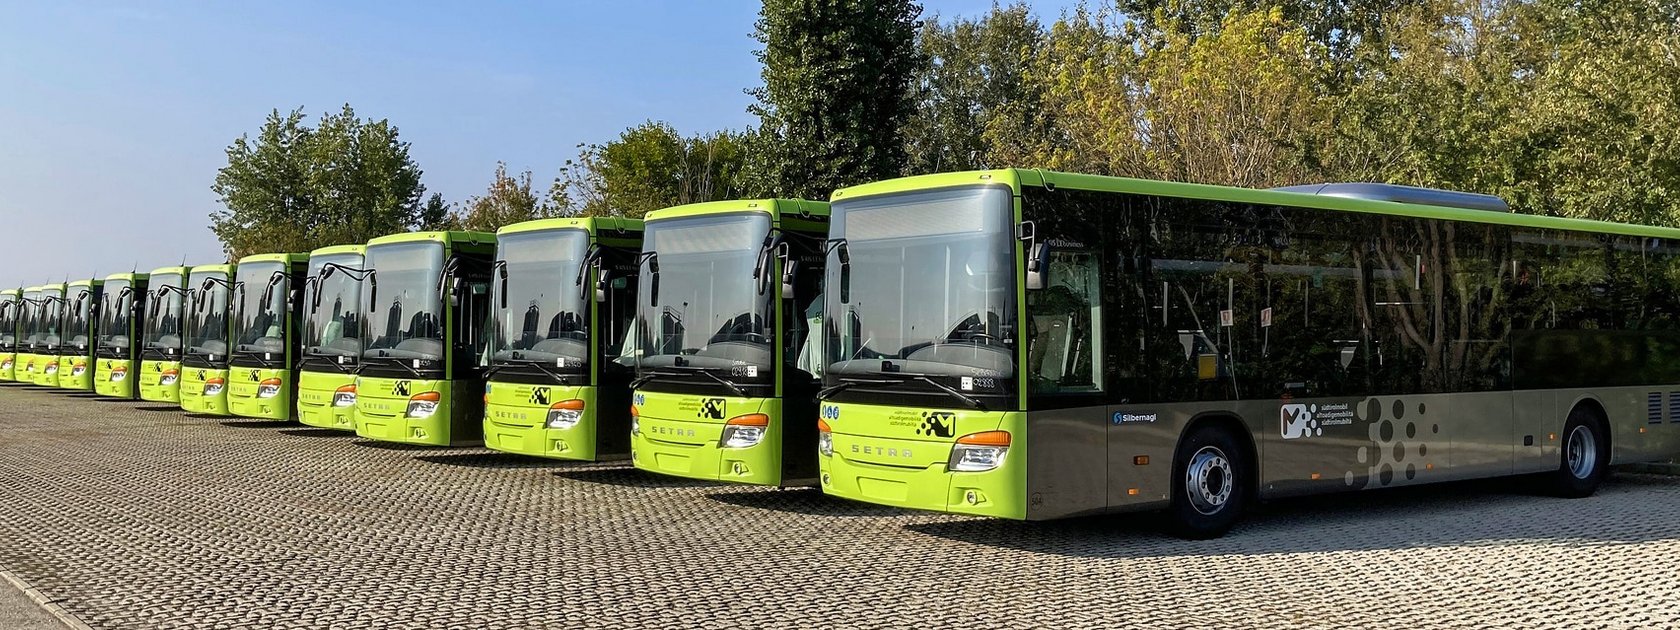 BUS 4 - Daimler Buses